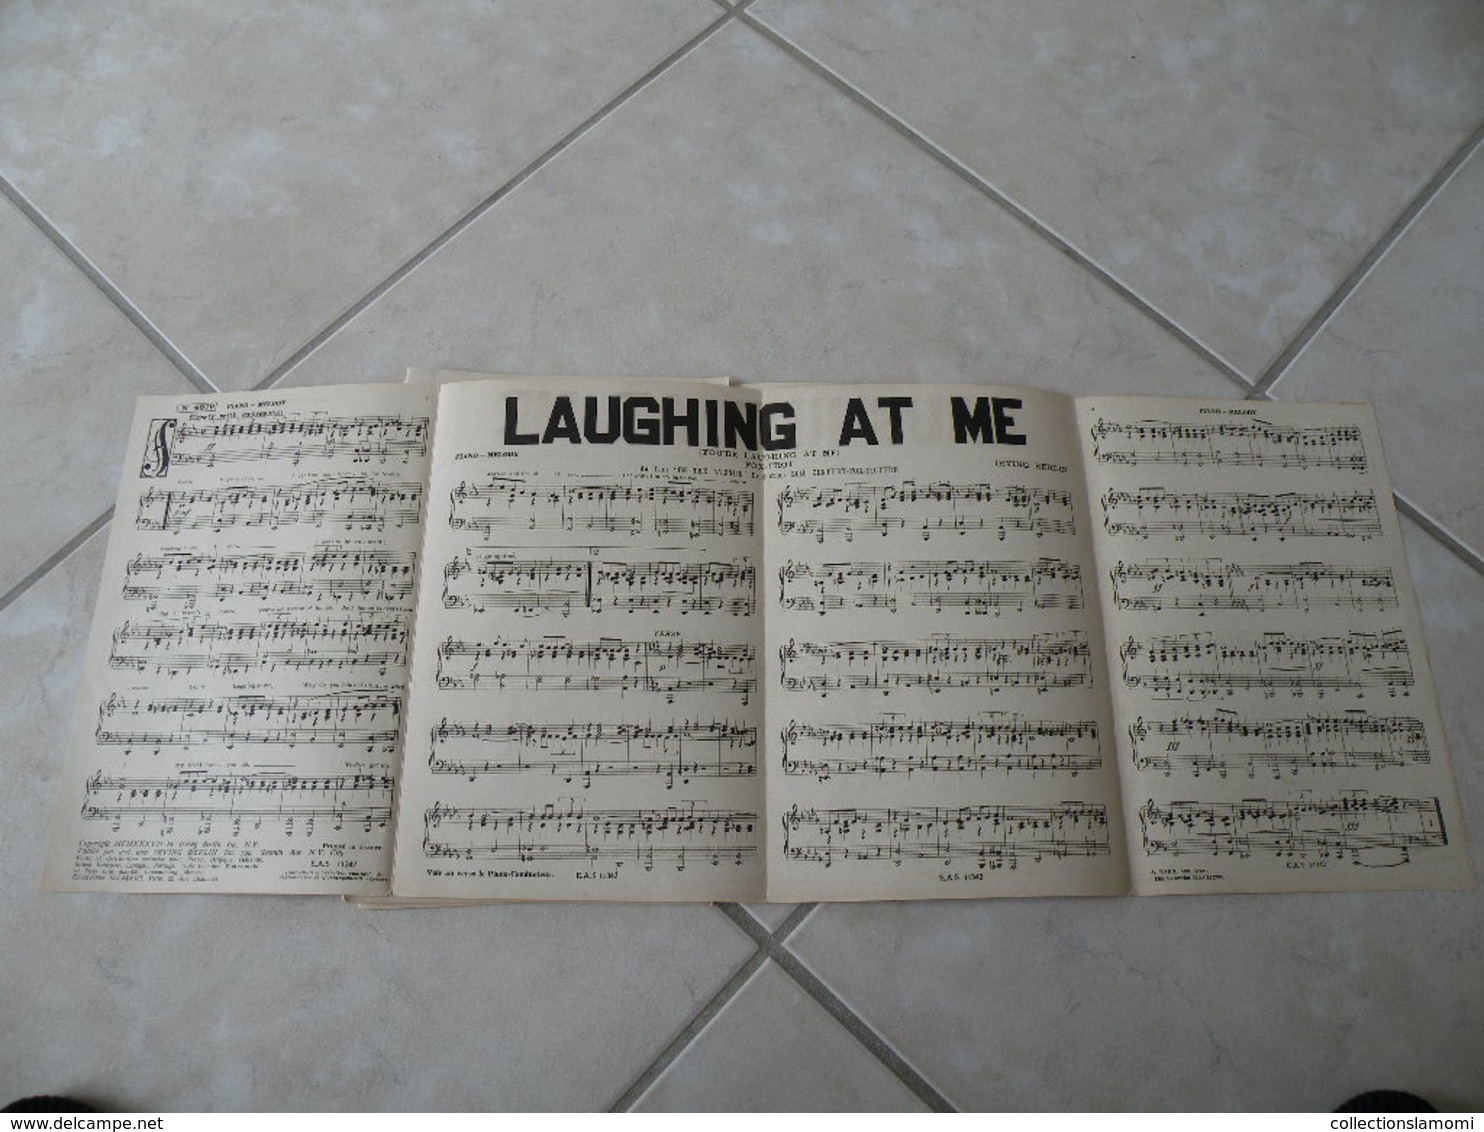 Laughing at me(Irving Berlin du film OnThe Avenue)(Paroles)(Musique)Partition pour orchestre 1937